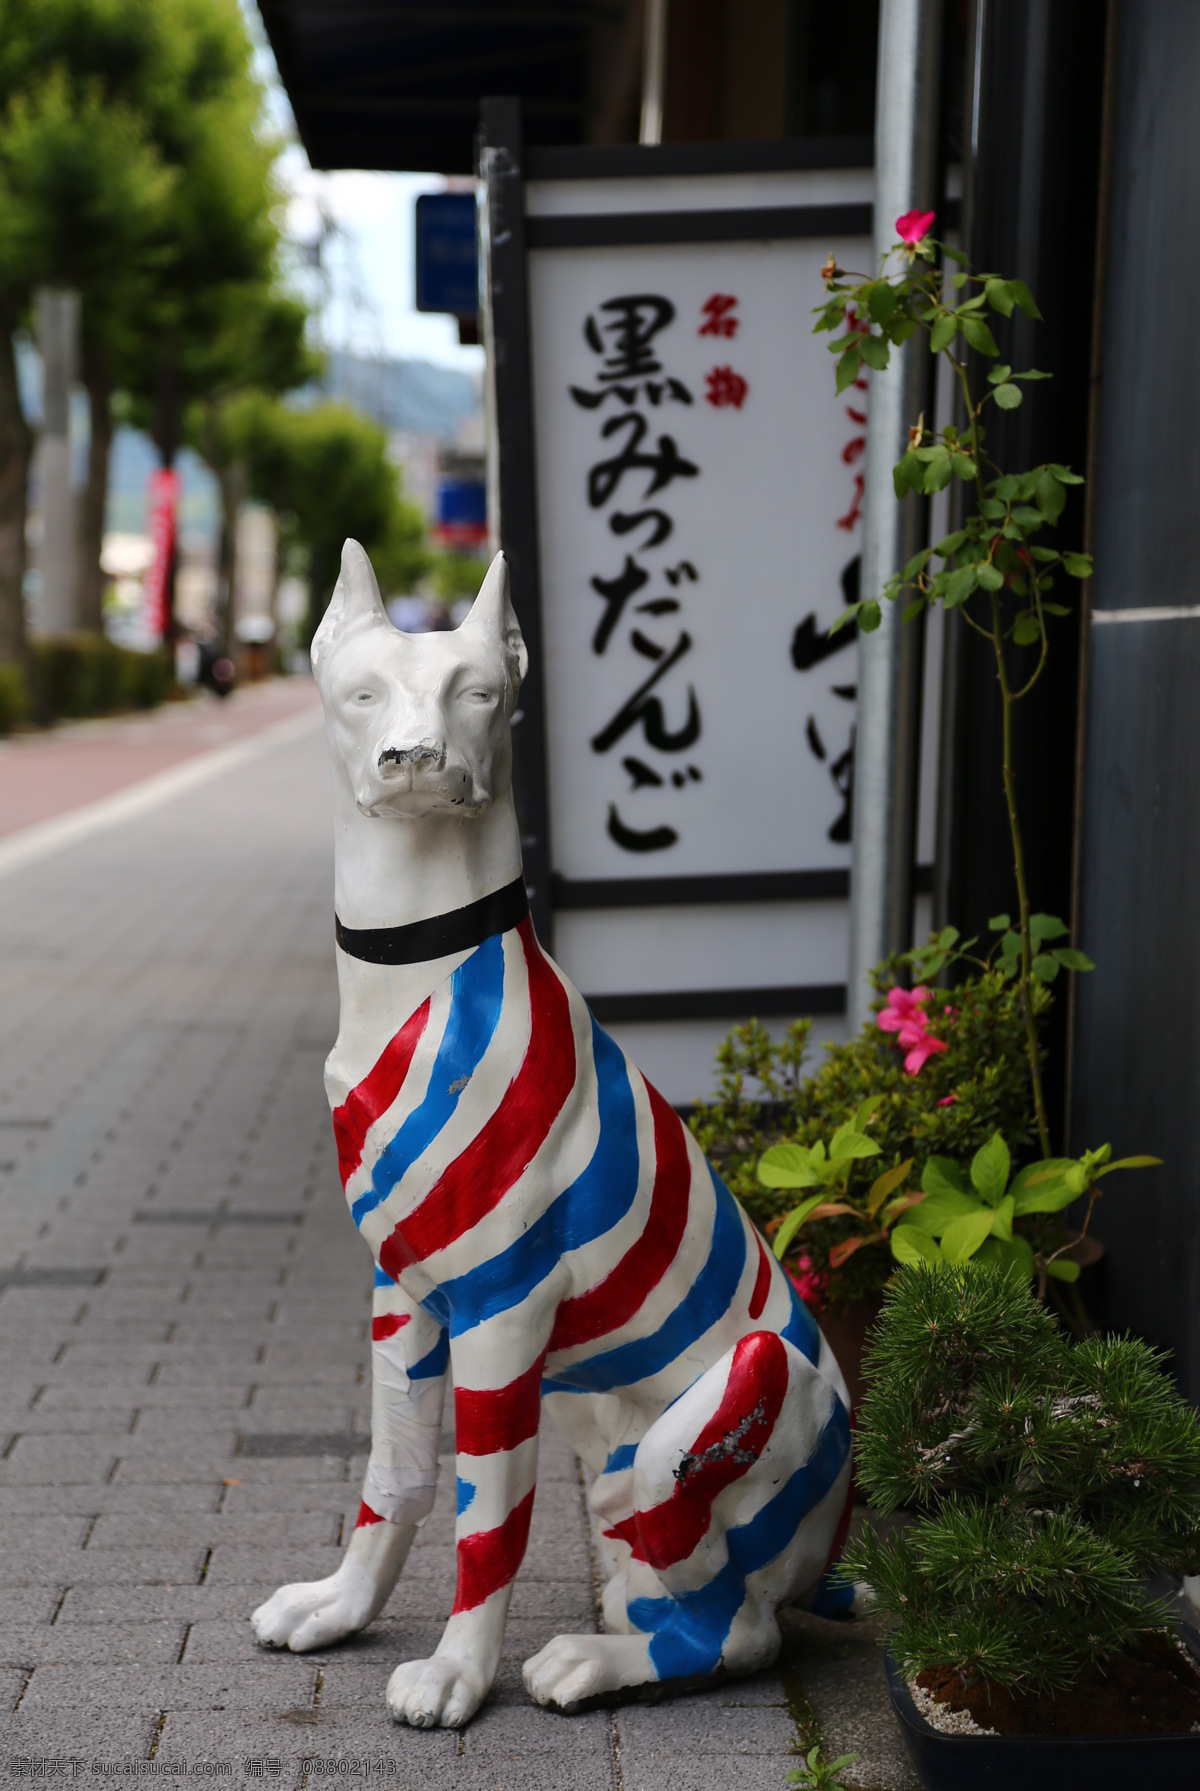 日本 街头 雕塑 狗 狗狗 国外旅游 理发店 旅游摄影 日本街头 街头摄影 小狗 红白蓝 红蓝条 psd源文件